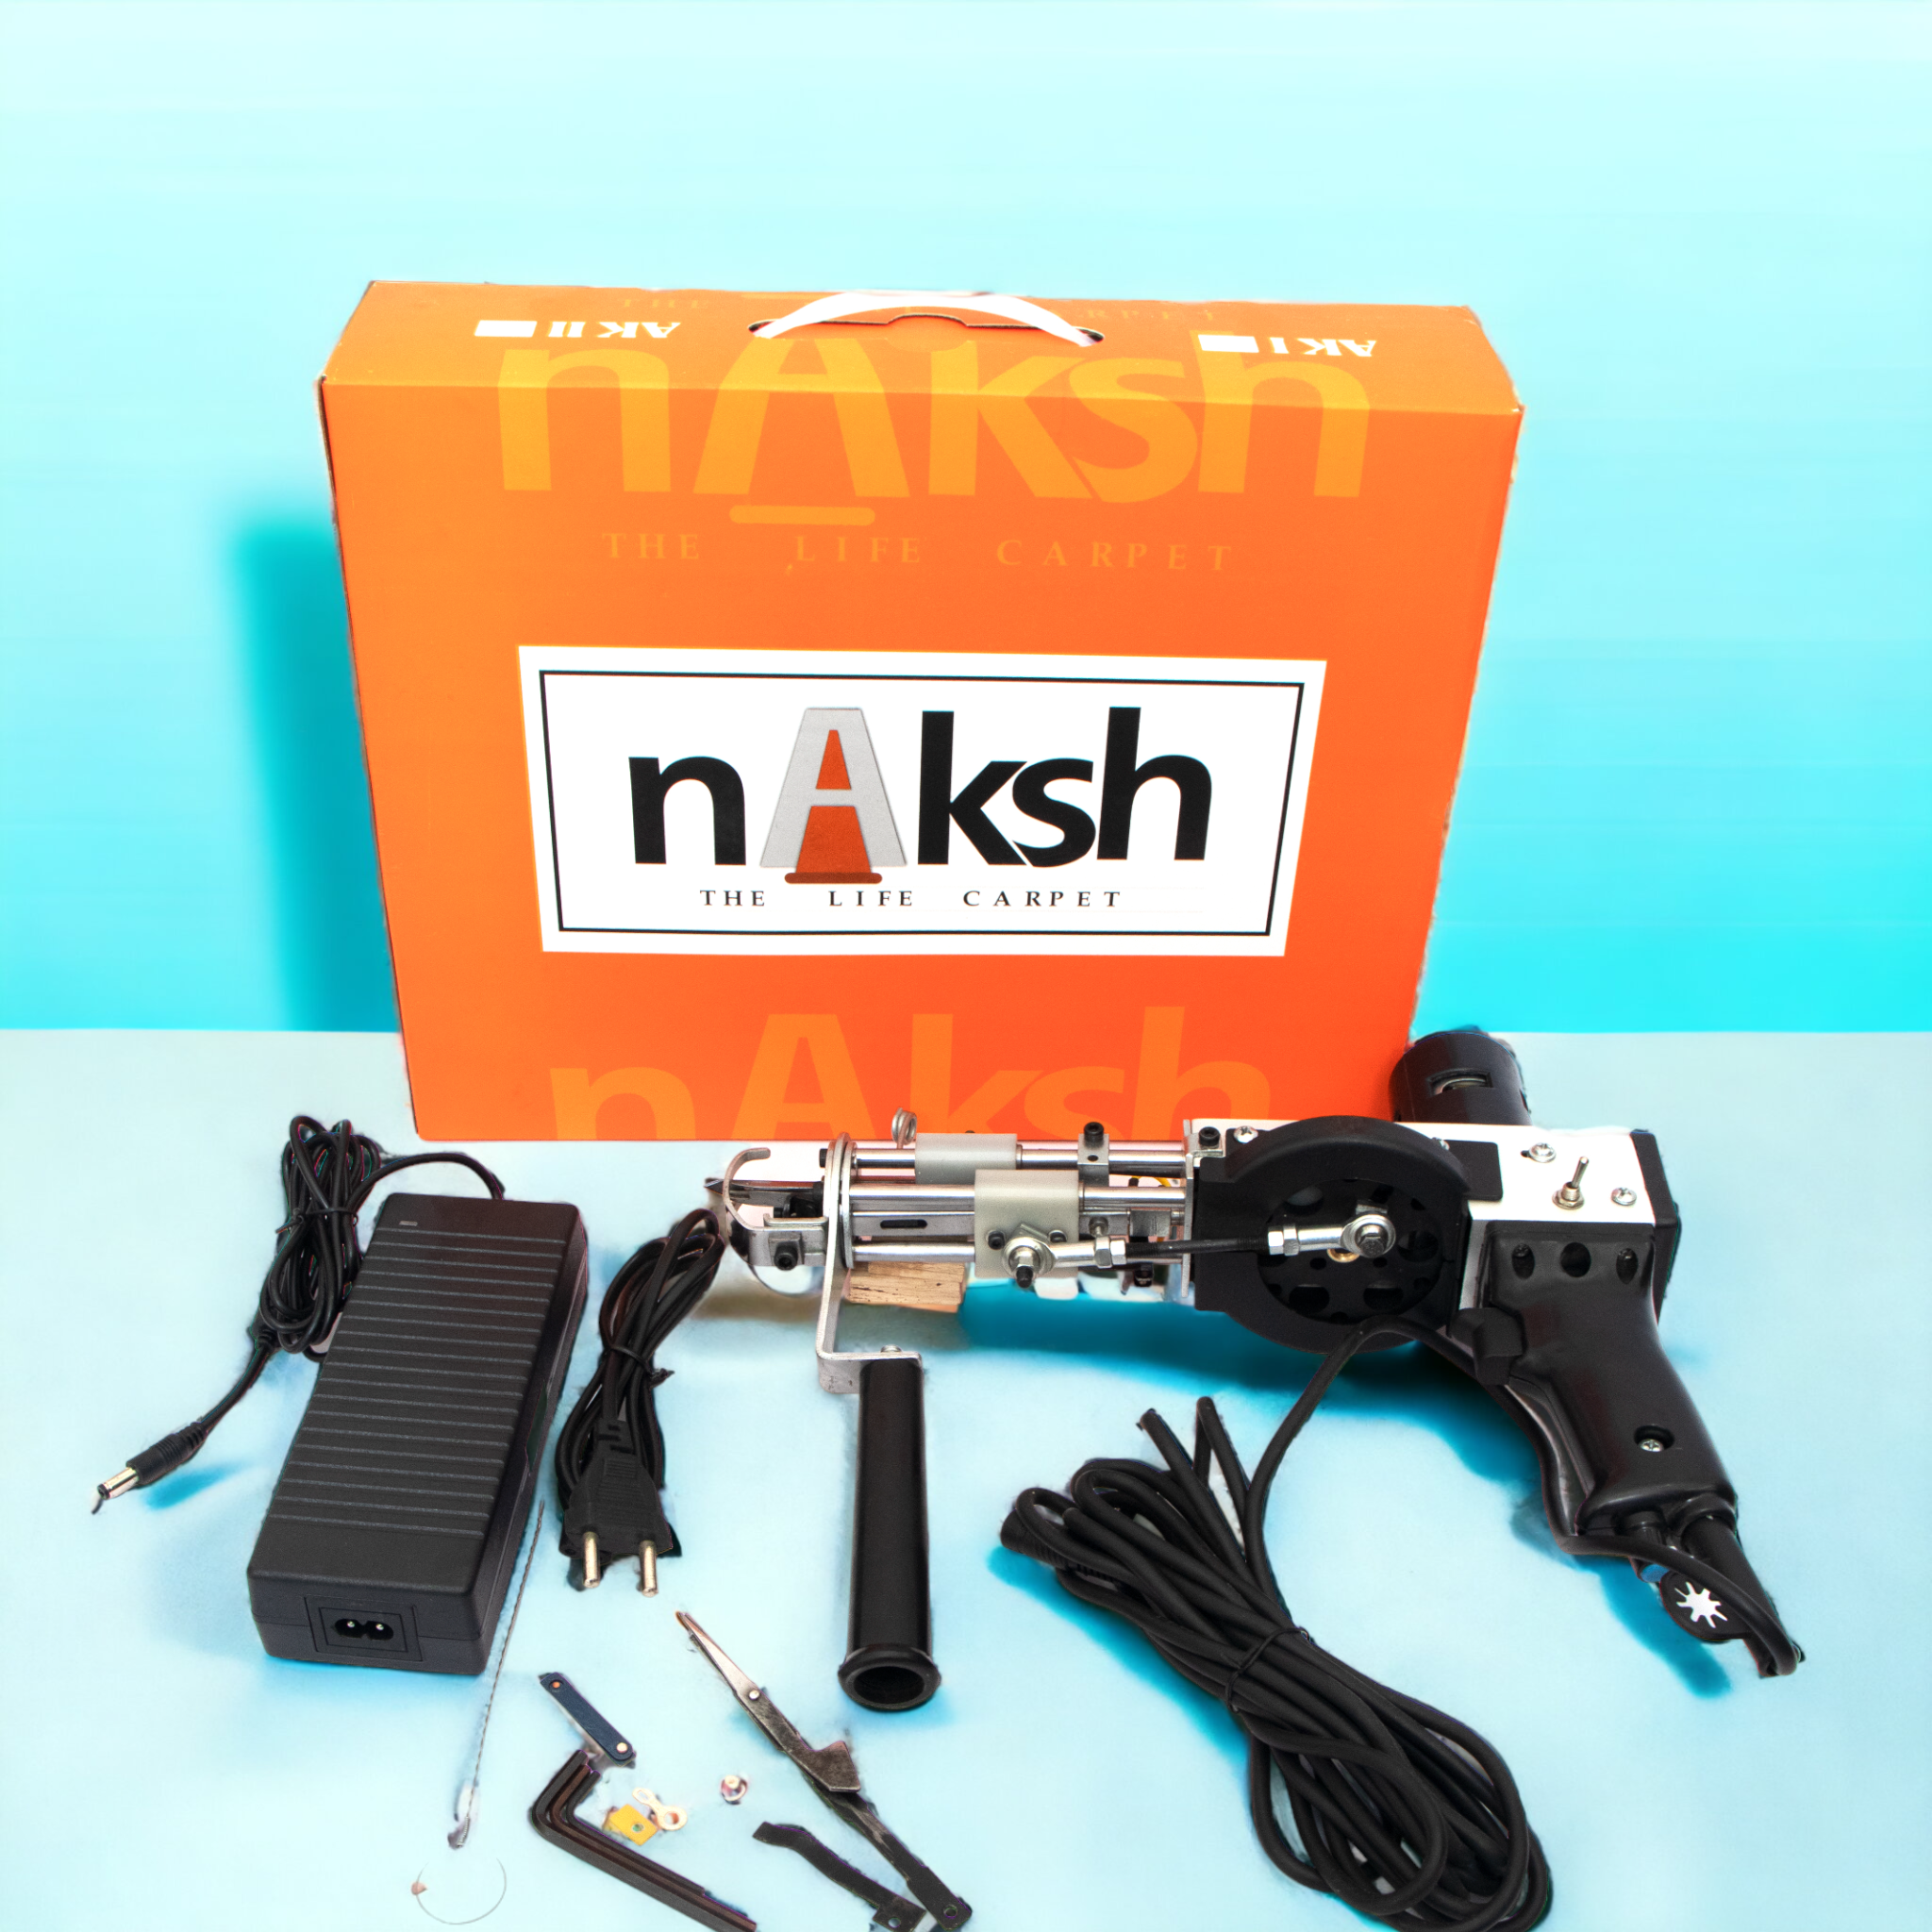 Circuit board of the Tufting Gun Pro-NK01 Duo/ AK-1